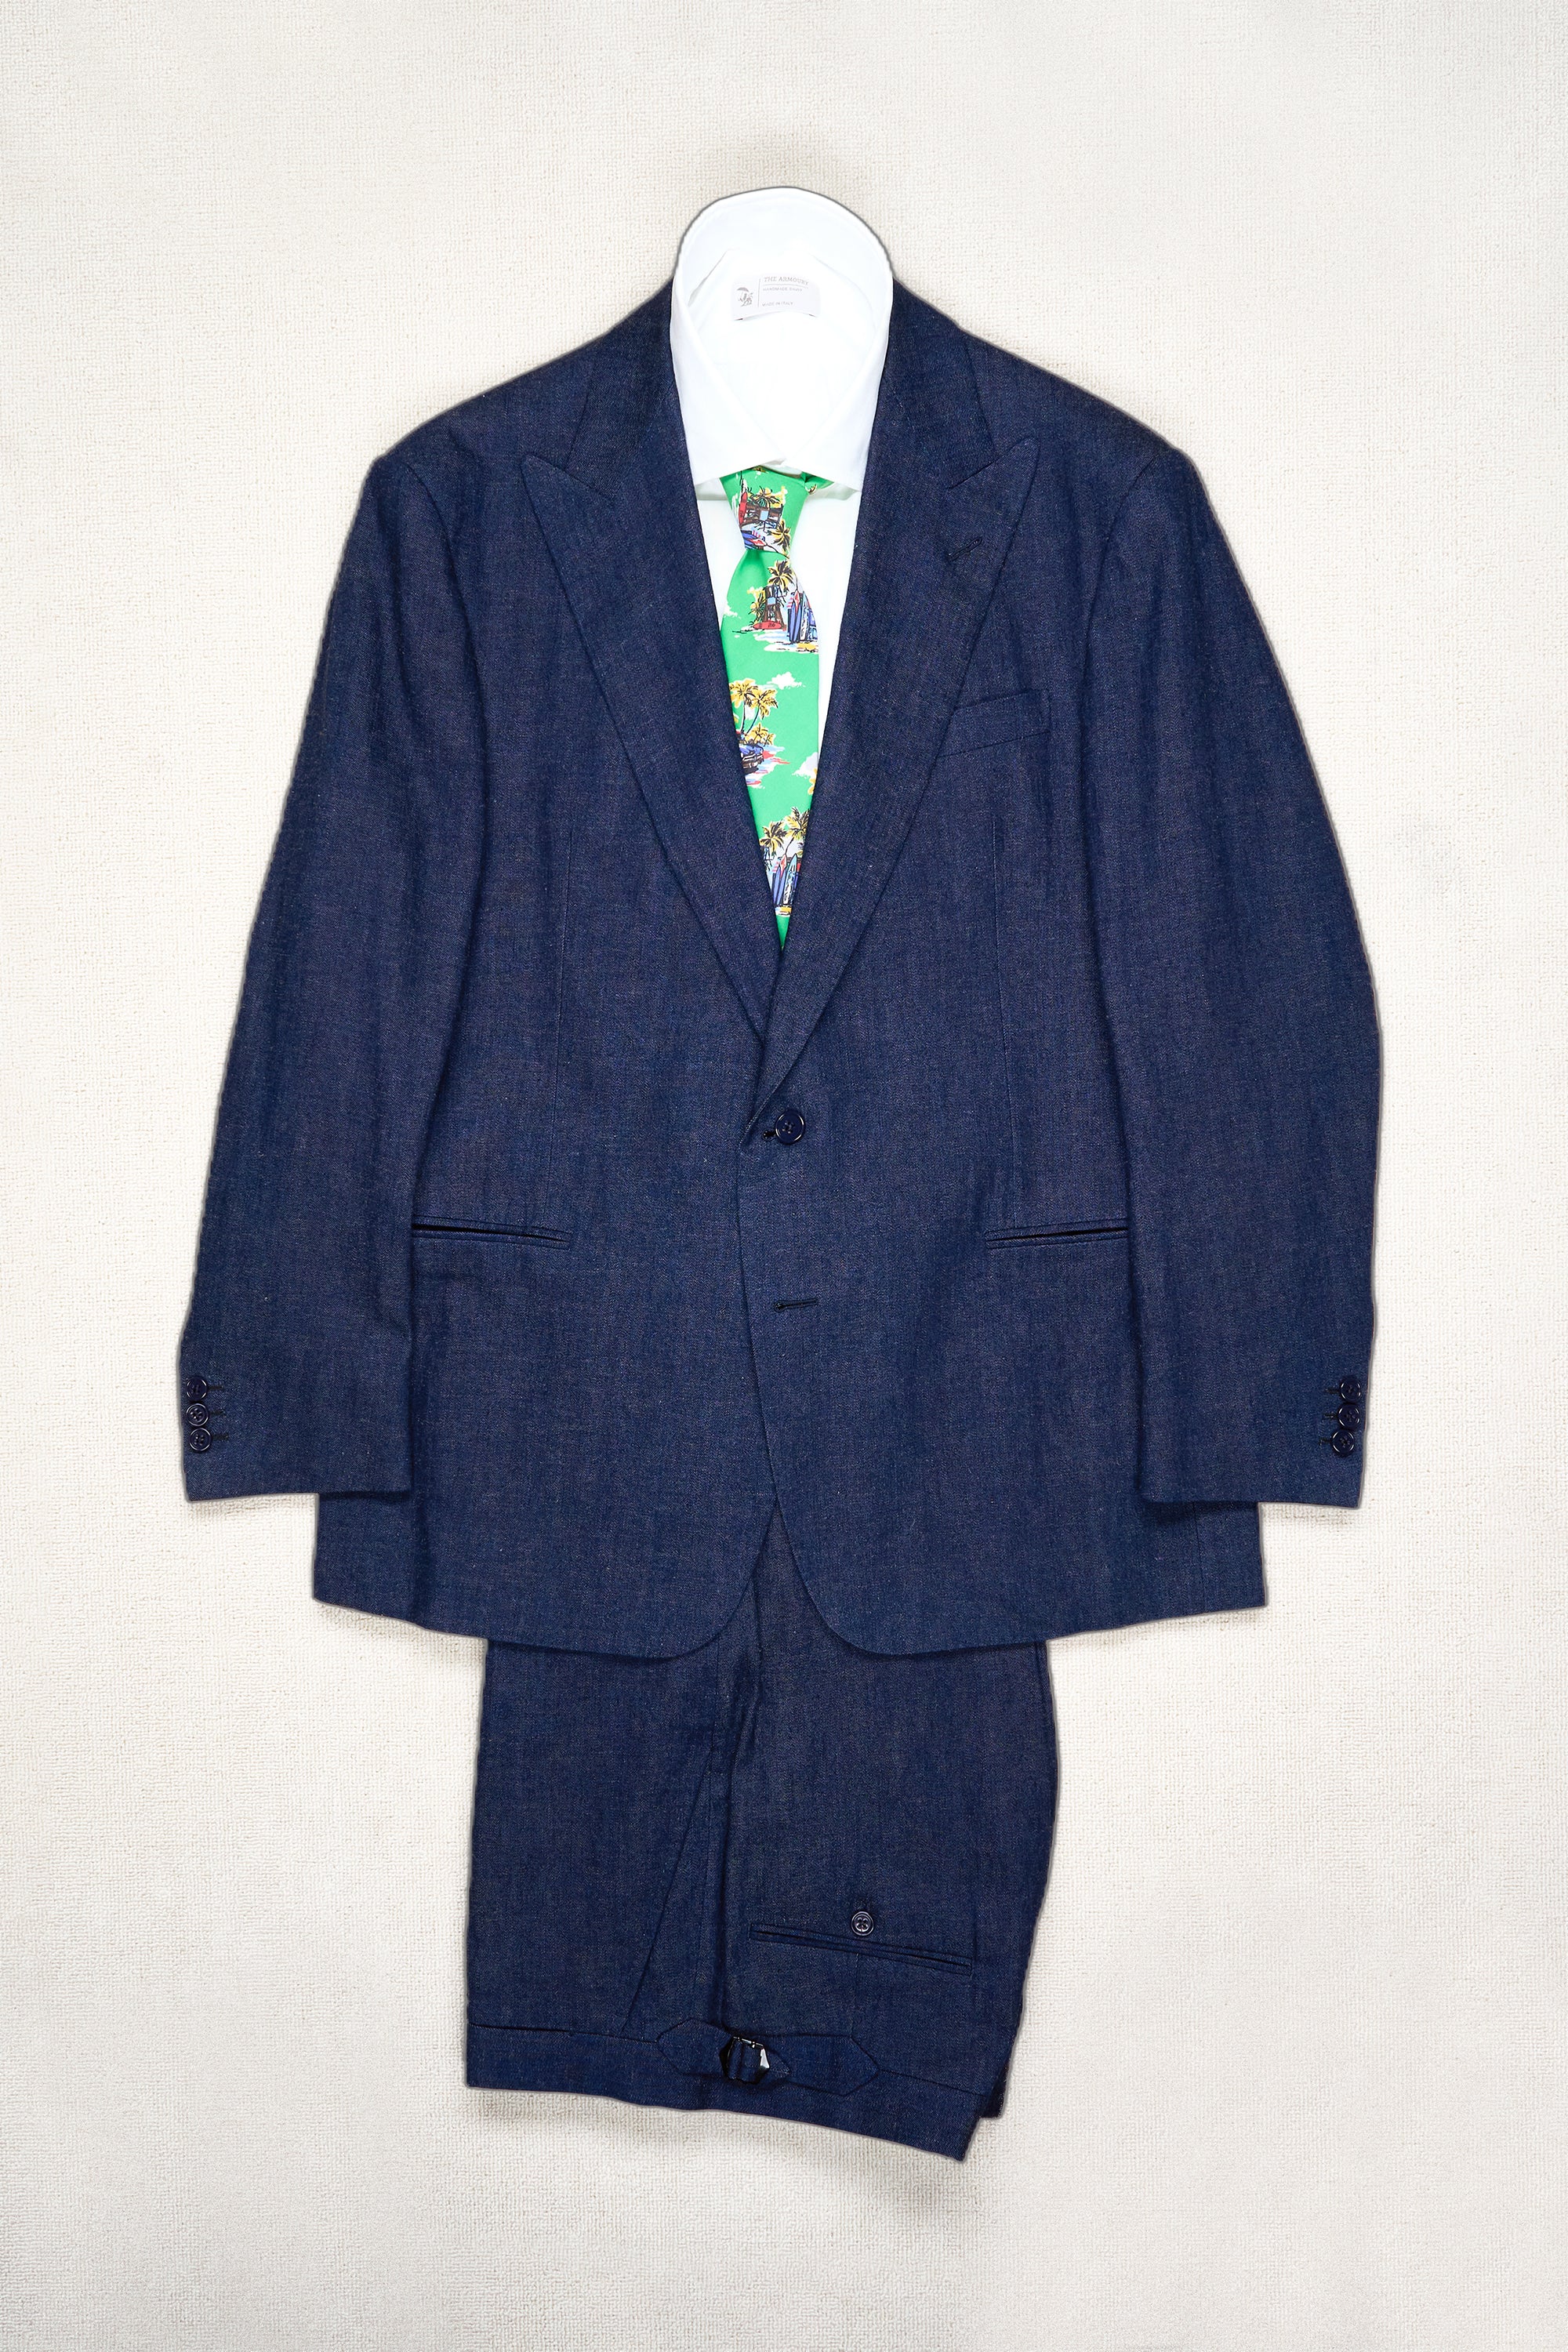 Ralph Lauren Purple Label Denim Cotton/Linen Suit